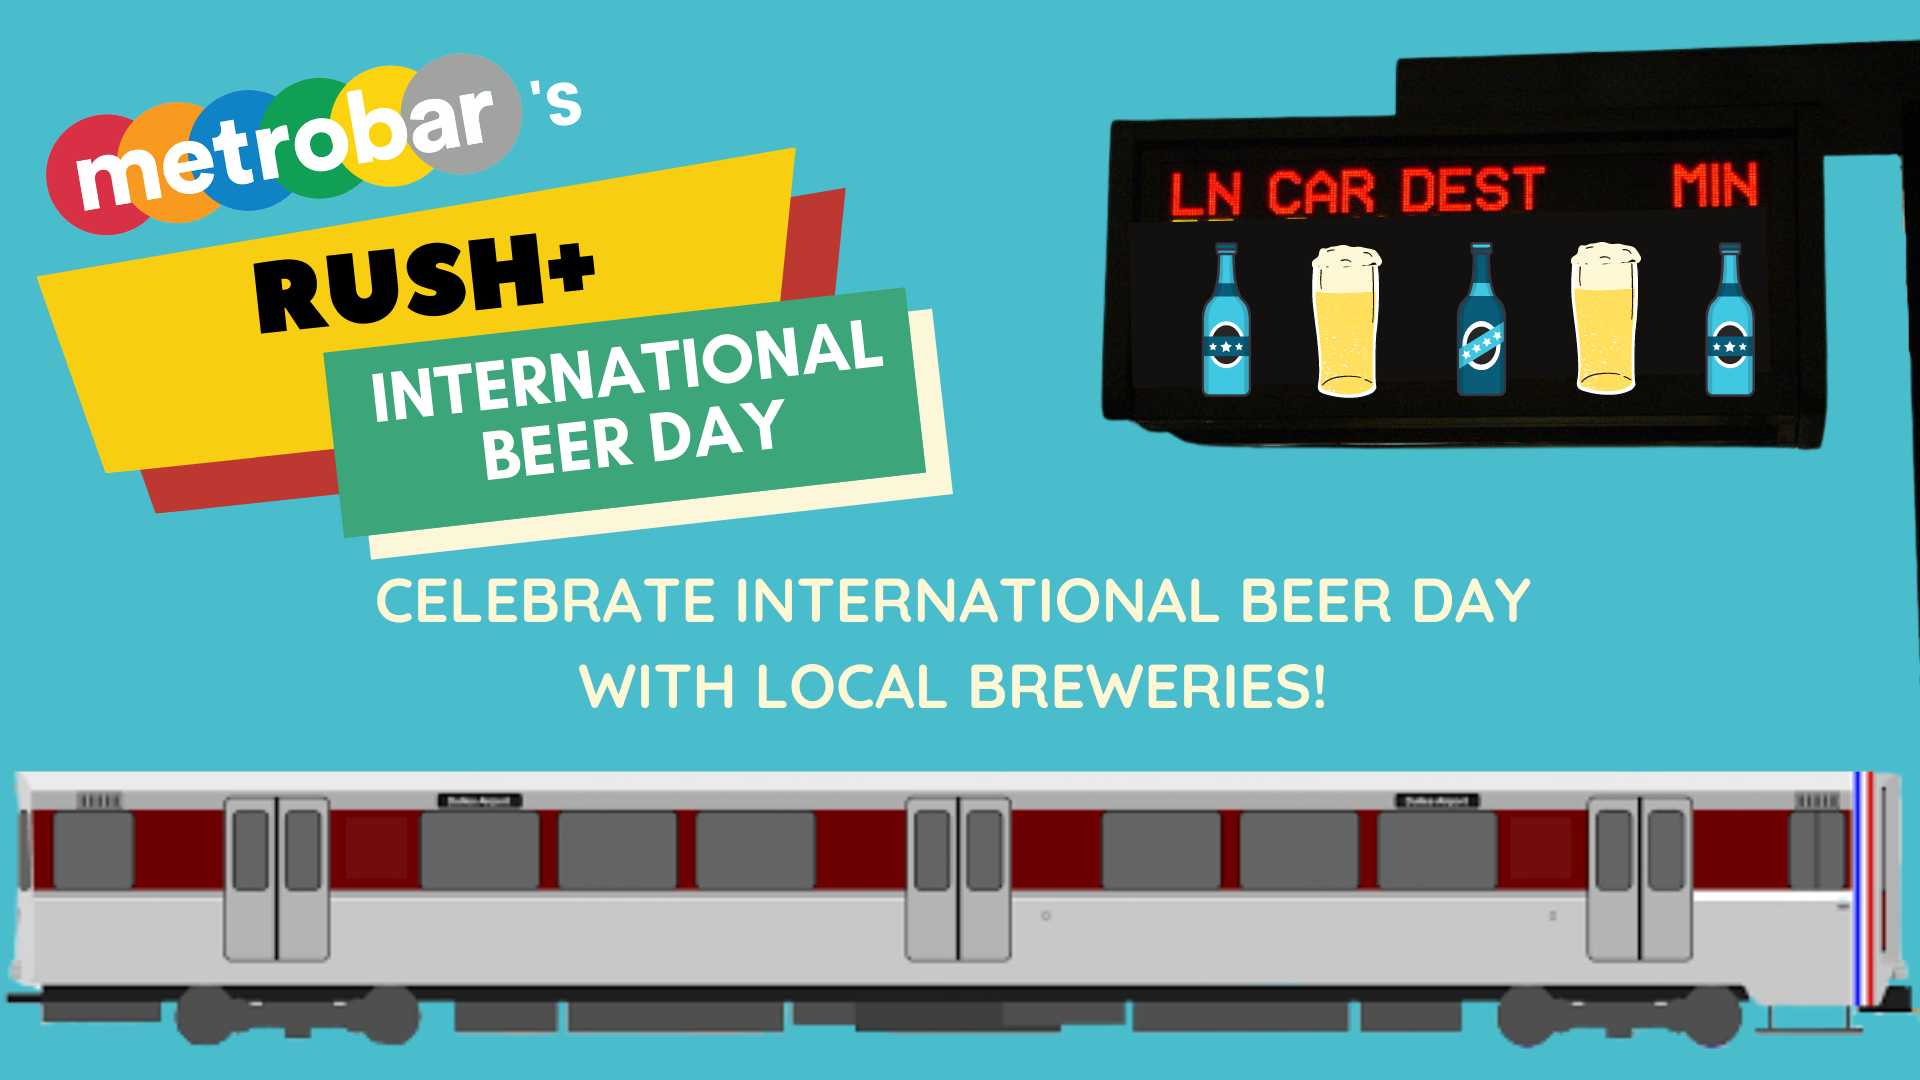 Rush+ International Beer Day